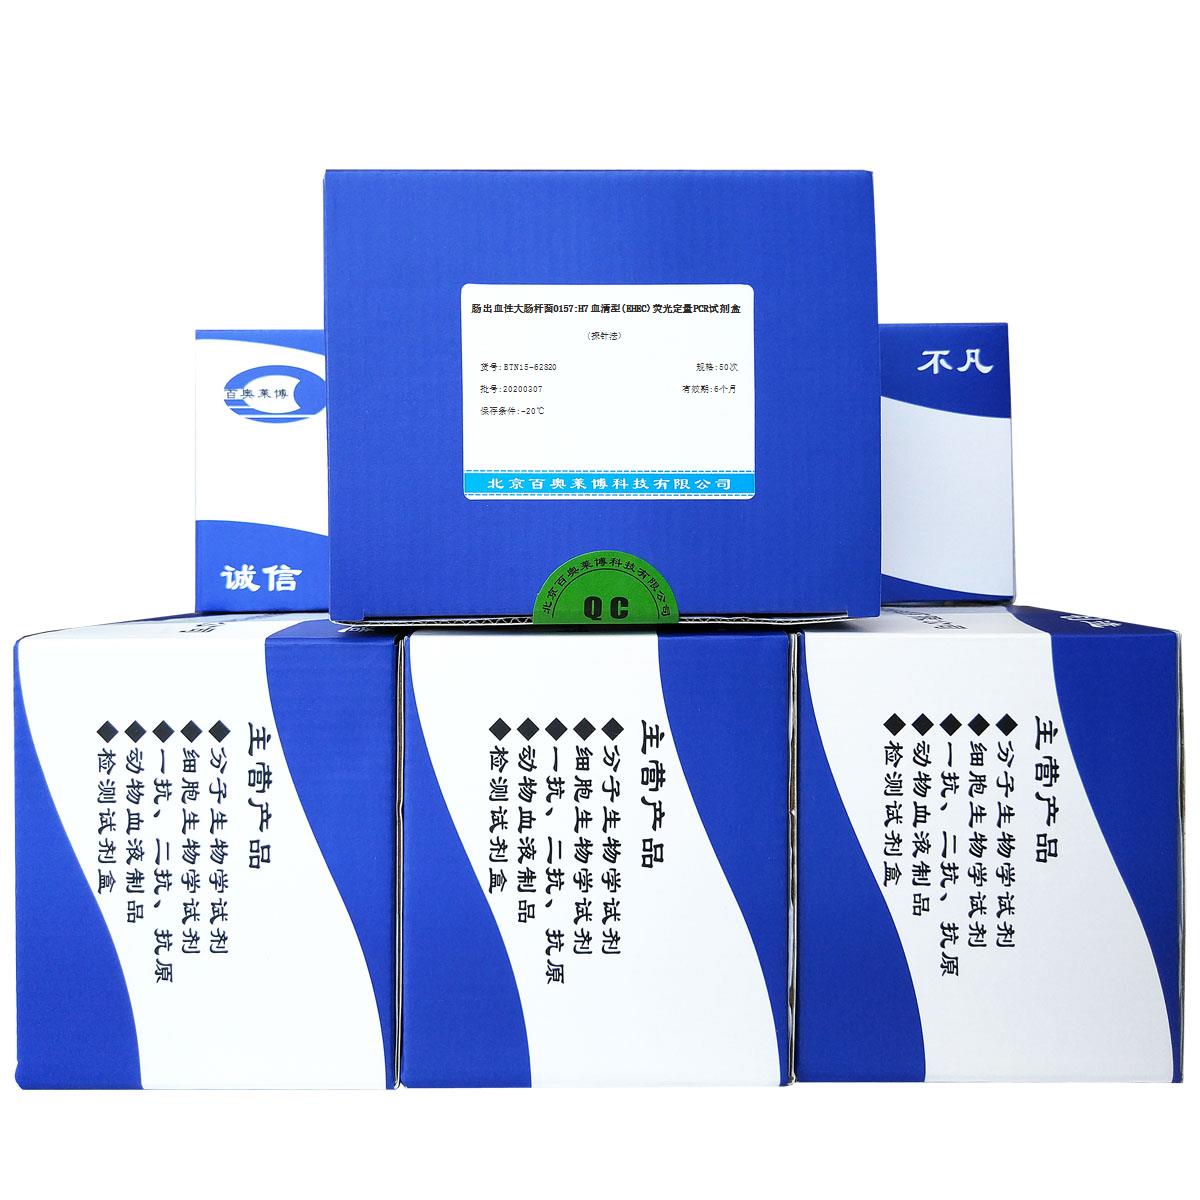 肠出血性大肠杆菌O157:H7血清型(EHEC)荧光定量PCR试剂盒(探针法)